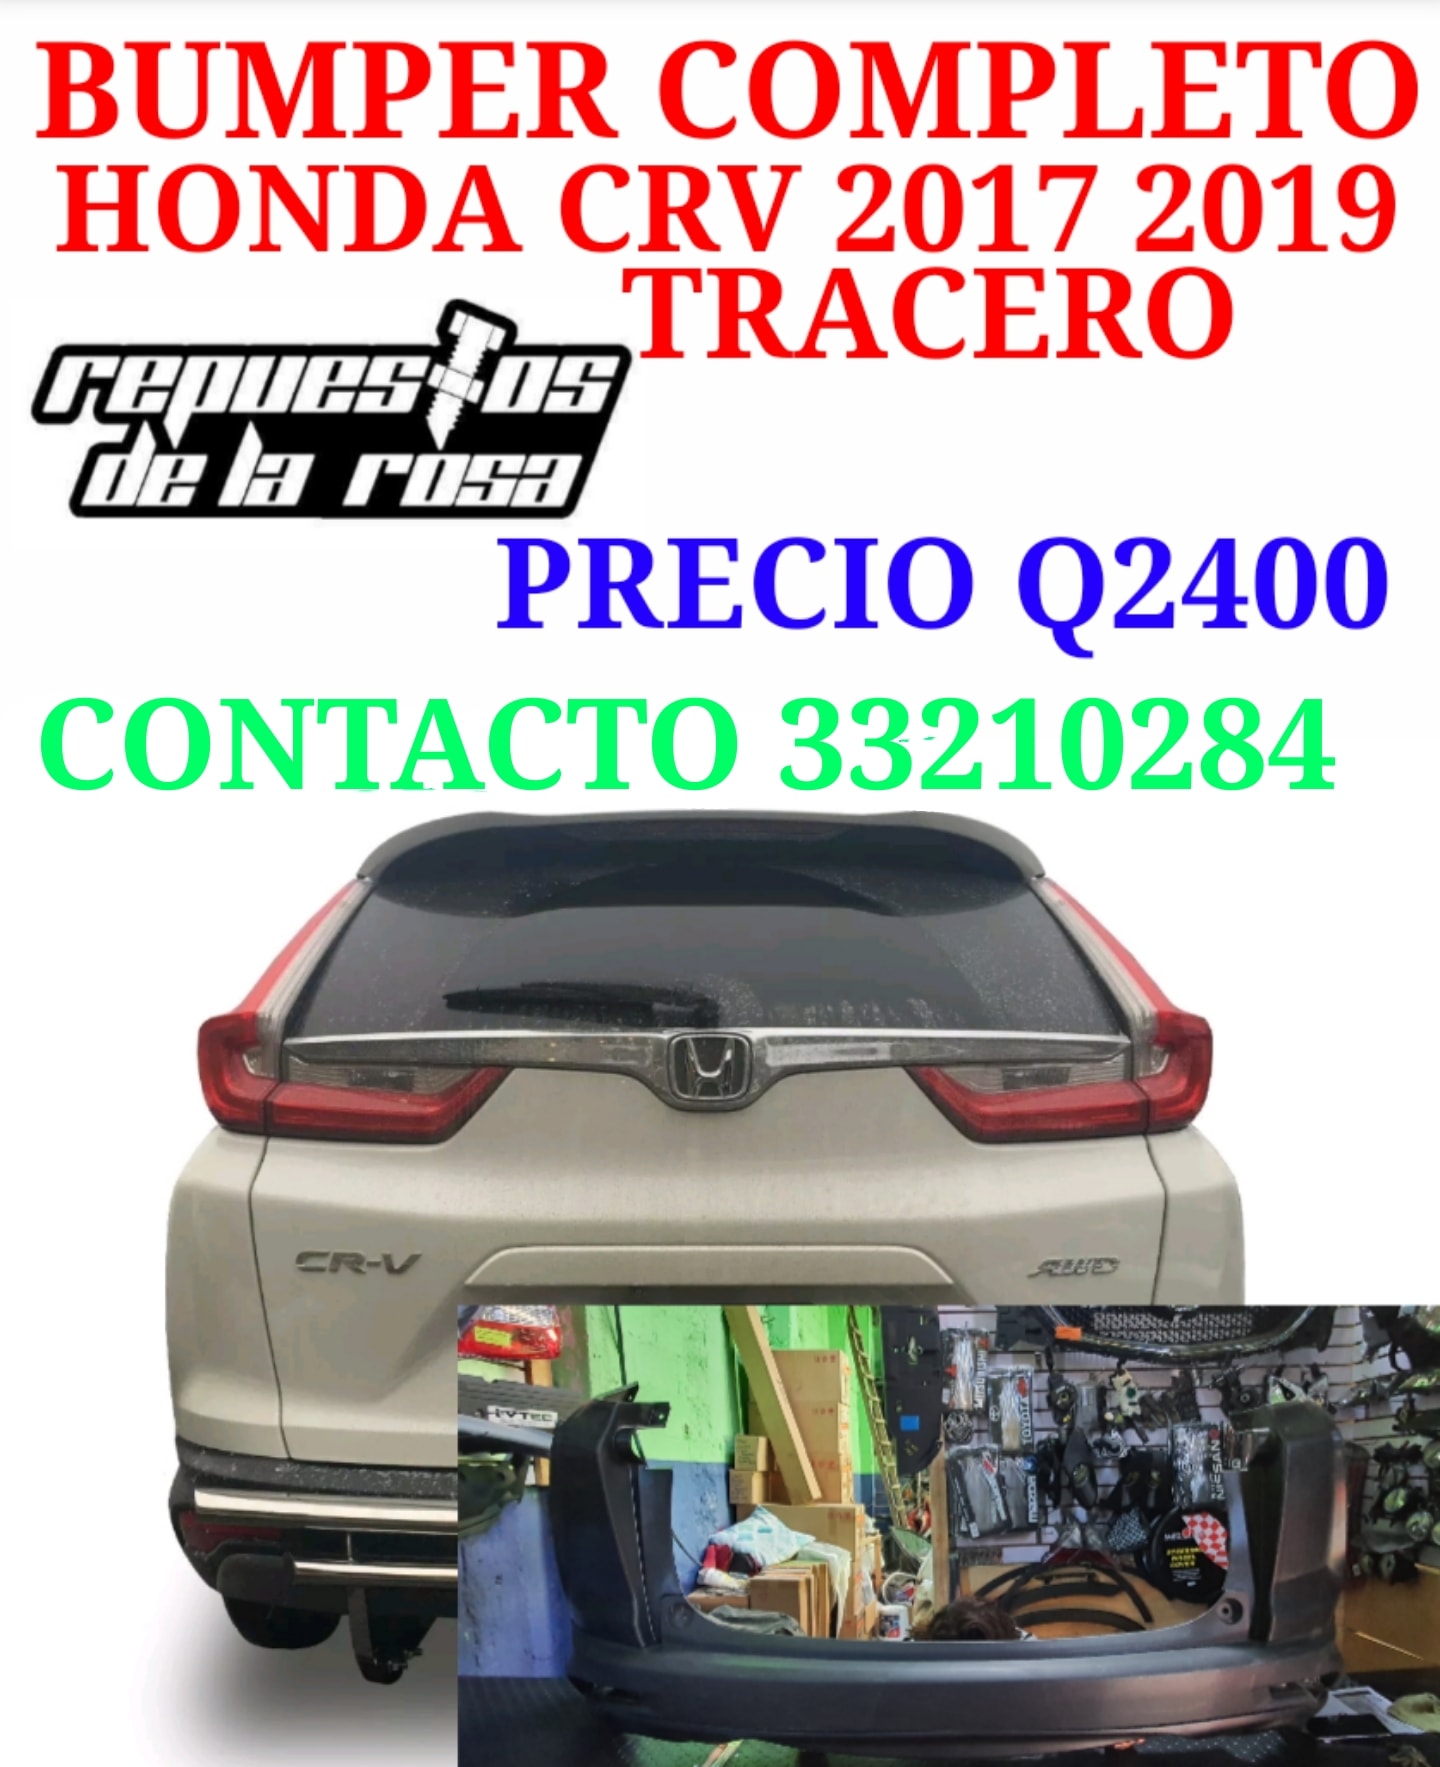 BUMPER TRACERO HONDA CRV 2017 AL 2019